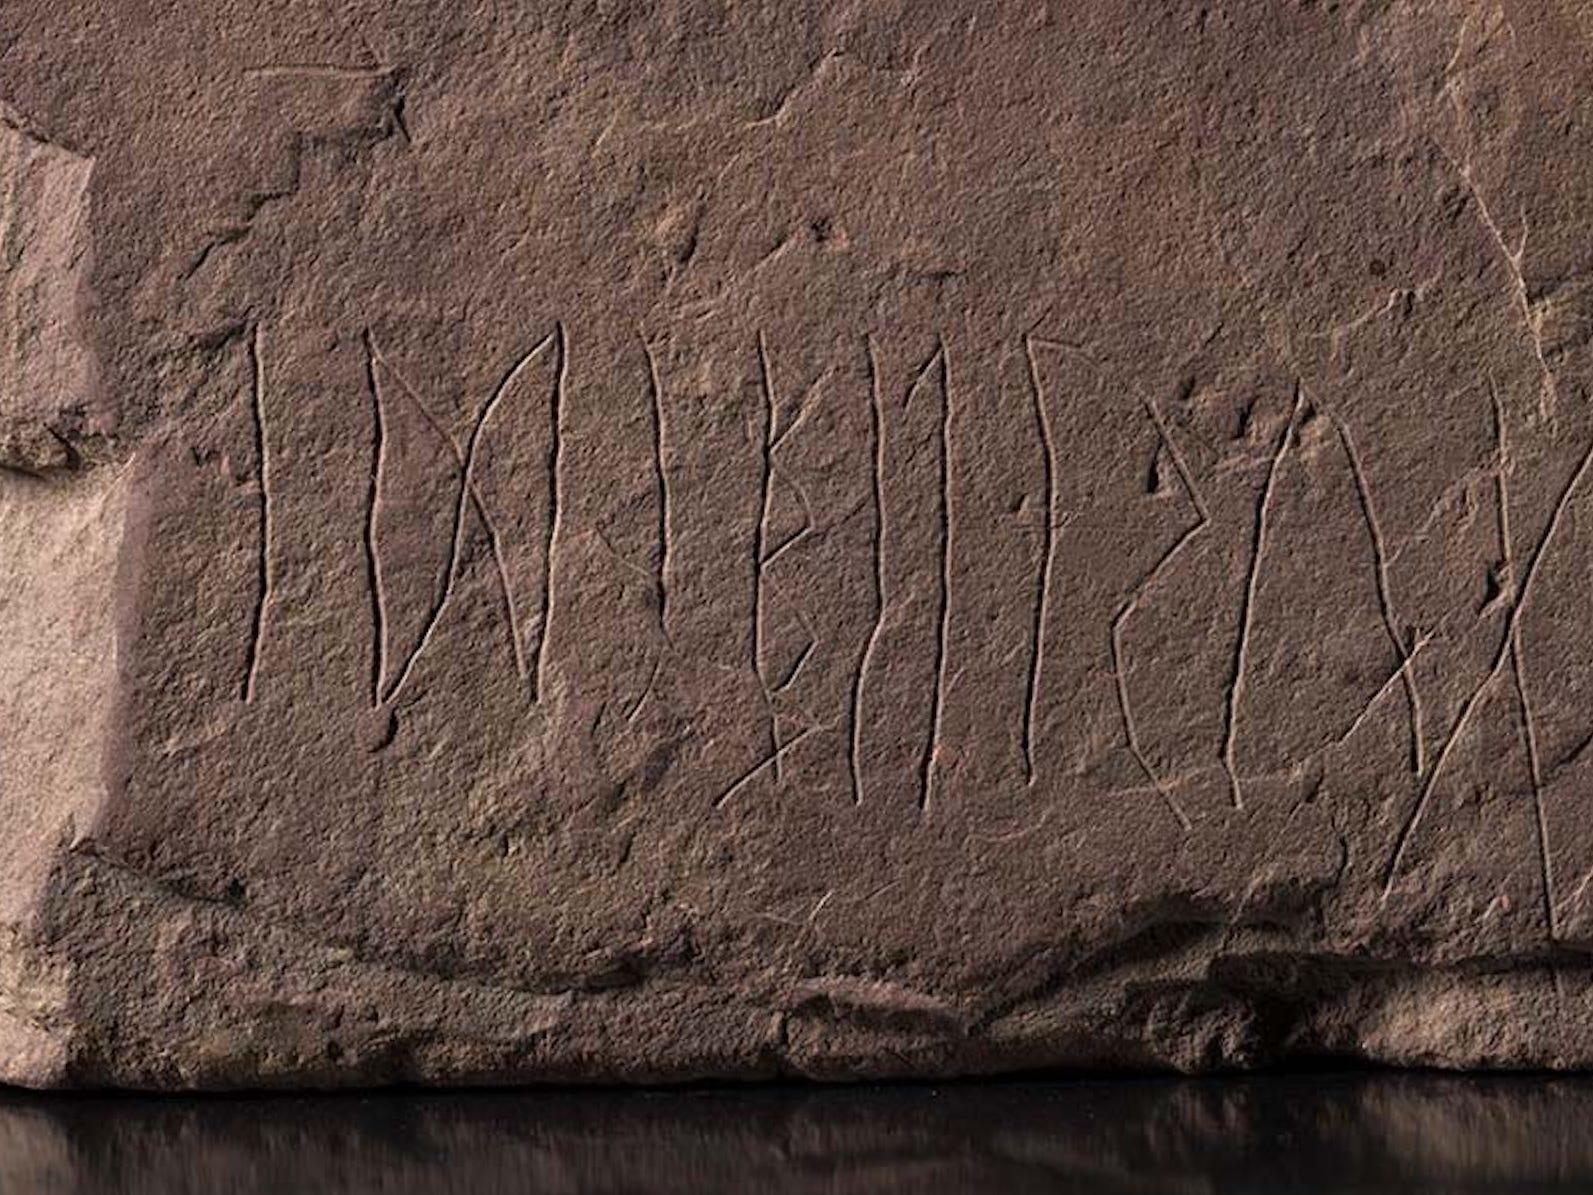 最古のルーン石碑を発見…2000年前の文字から分かること | Business